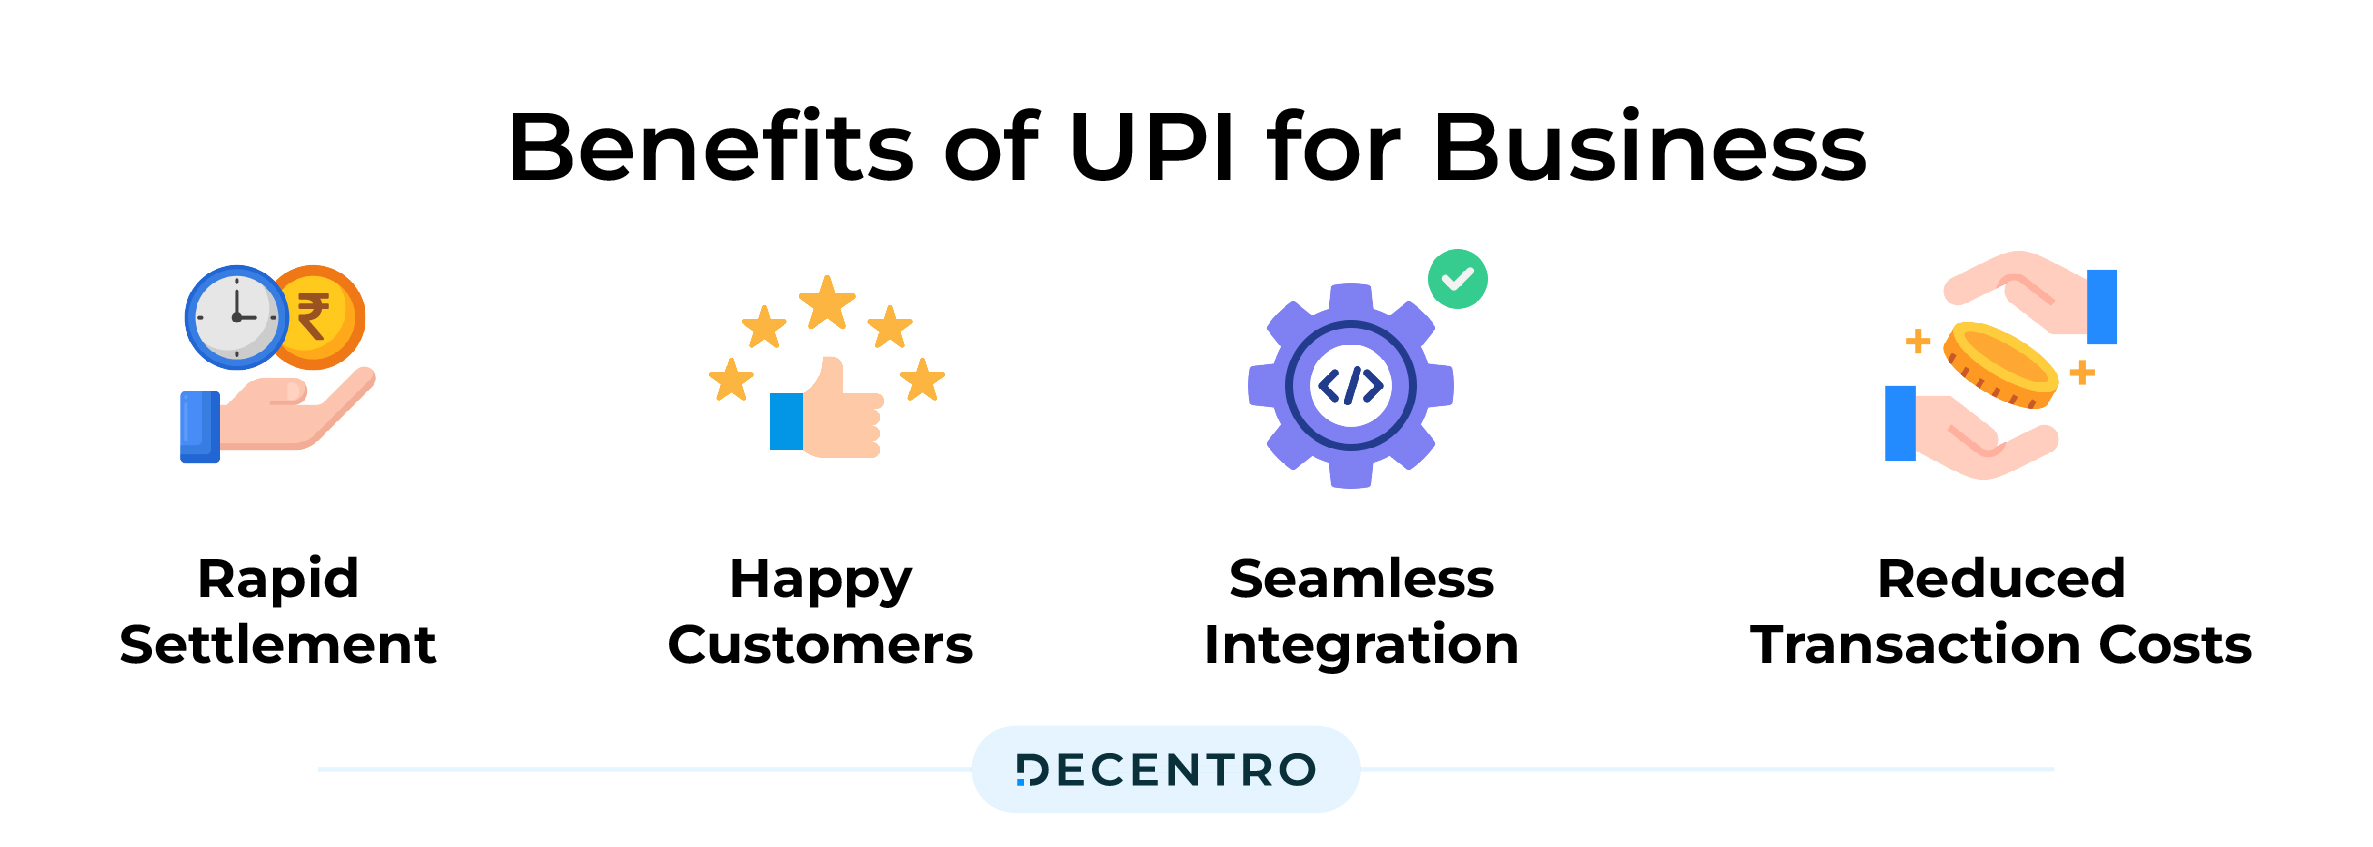 UPI for Business Benefits